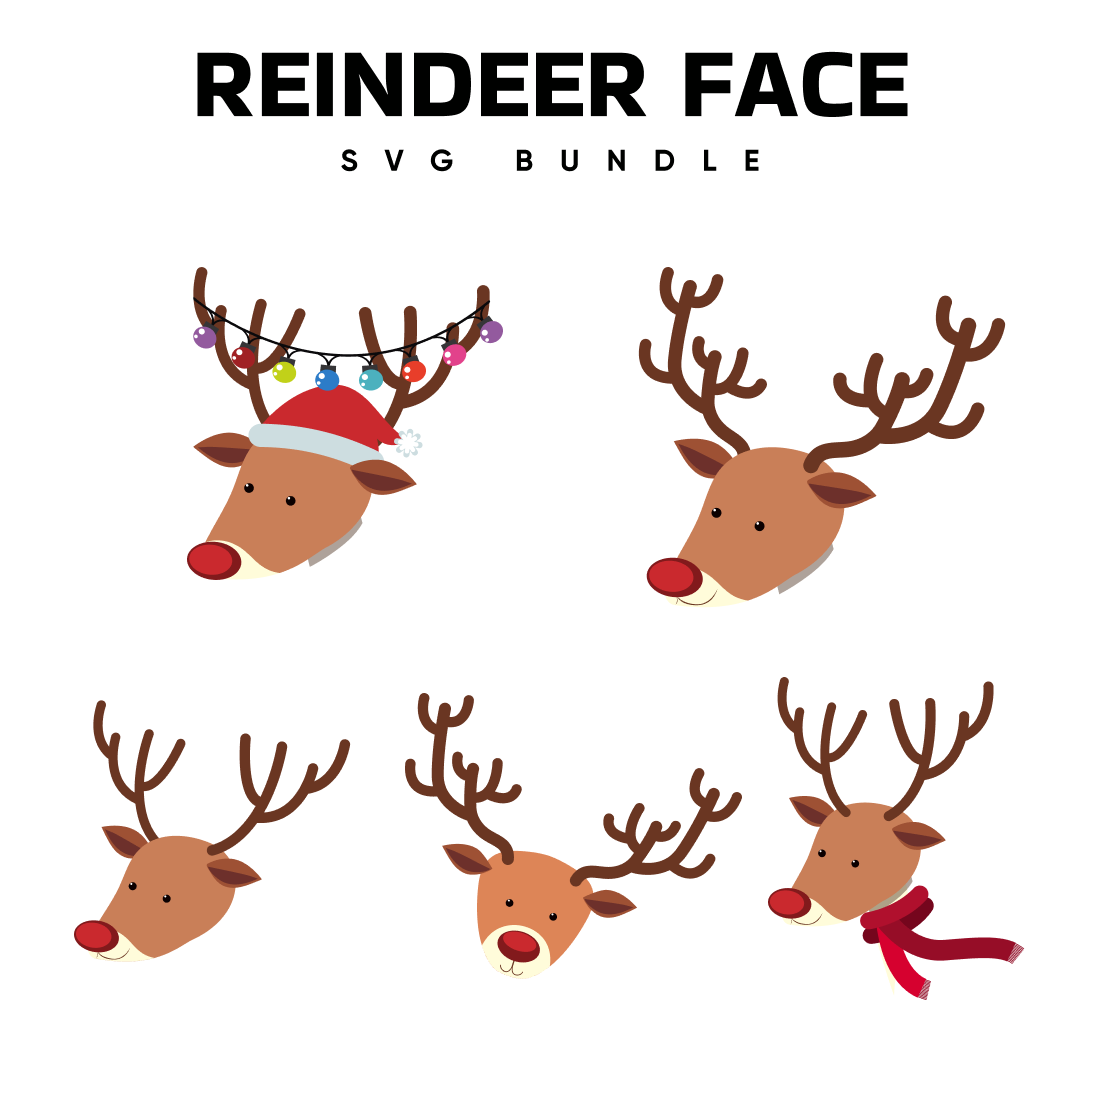 Reindeer face svg bundle.